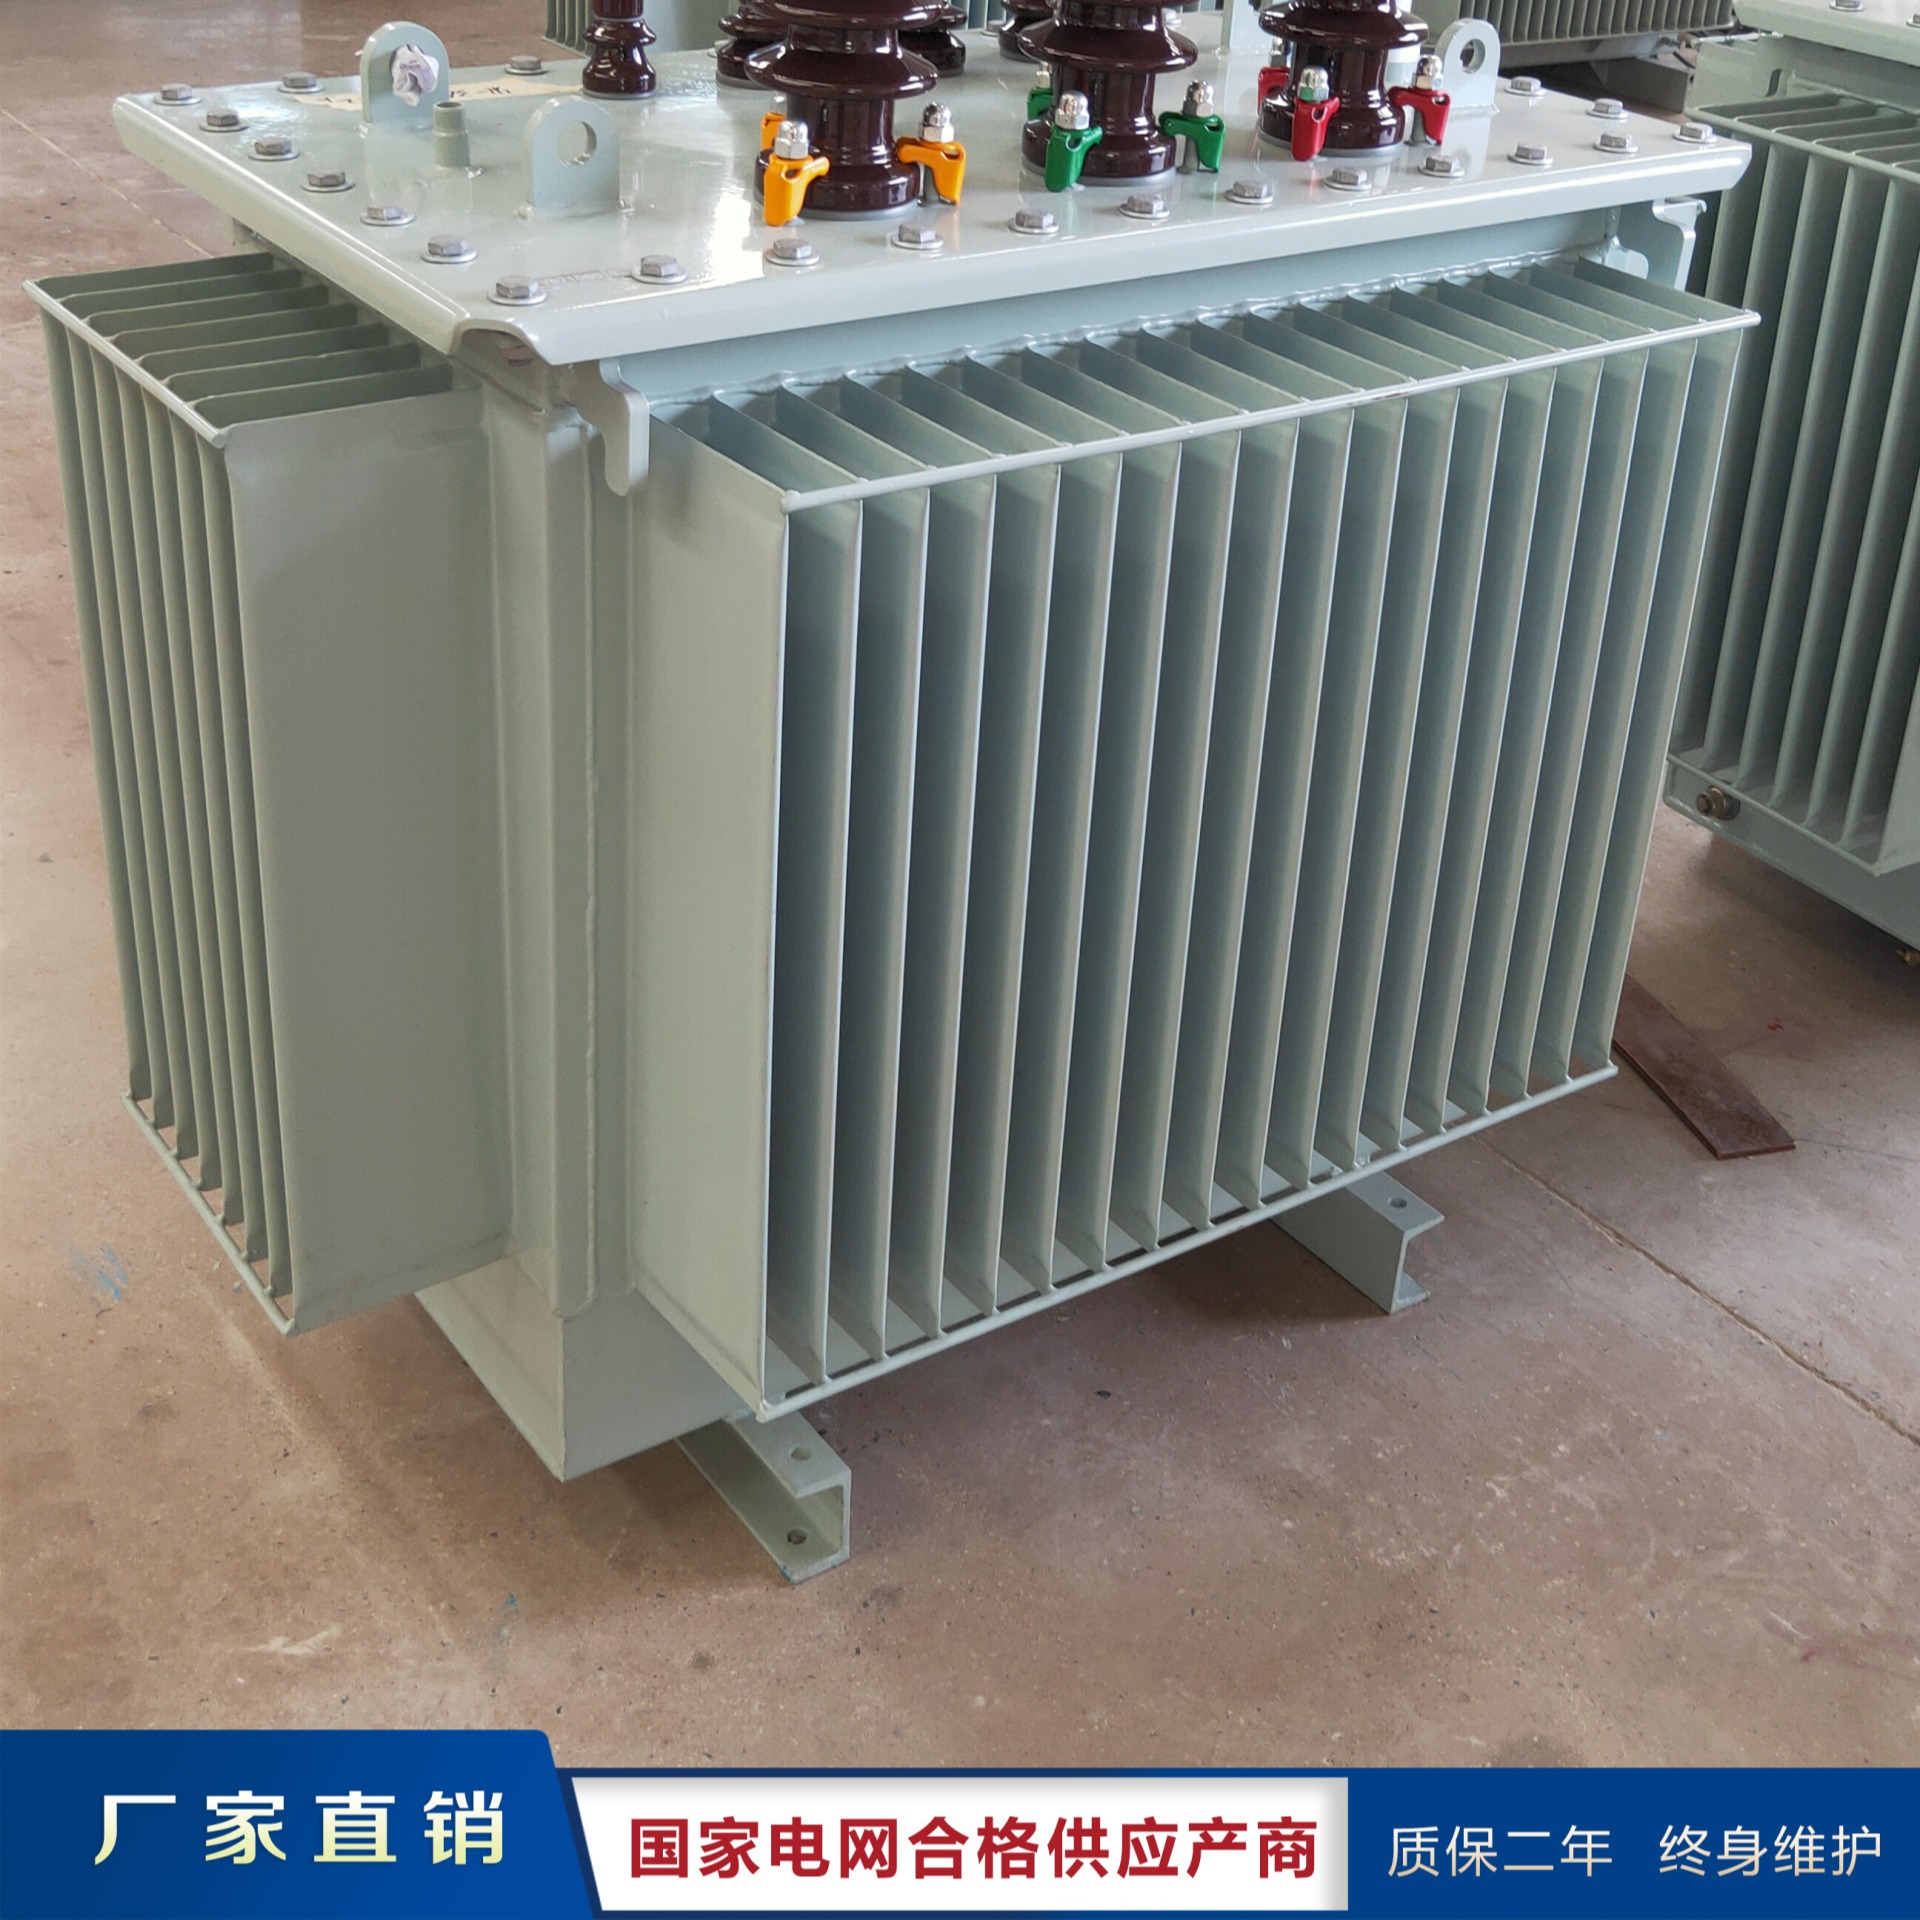 上海变压器厂家 S9-400KVA 宝山变压器厂家直销 S9-M系列变压器价格 S9系列 变压器工厂 鹏程电气